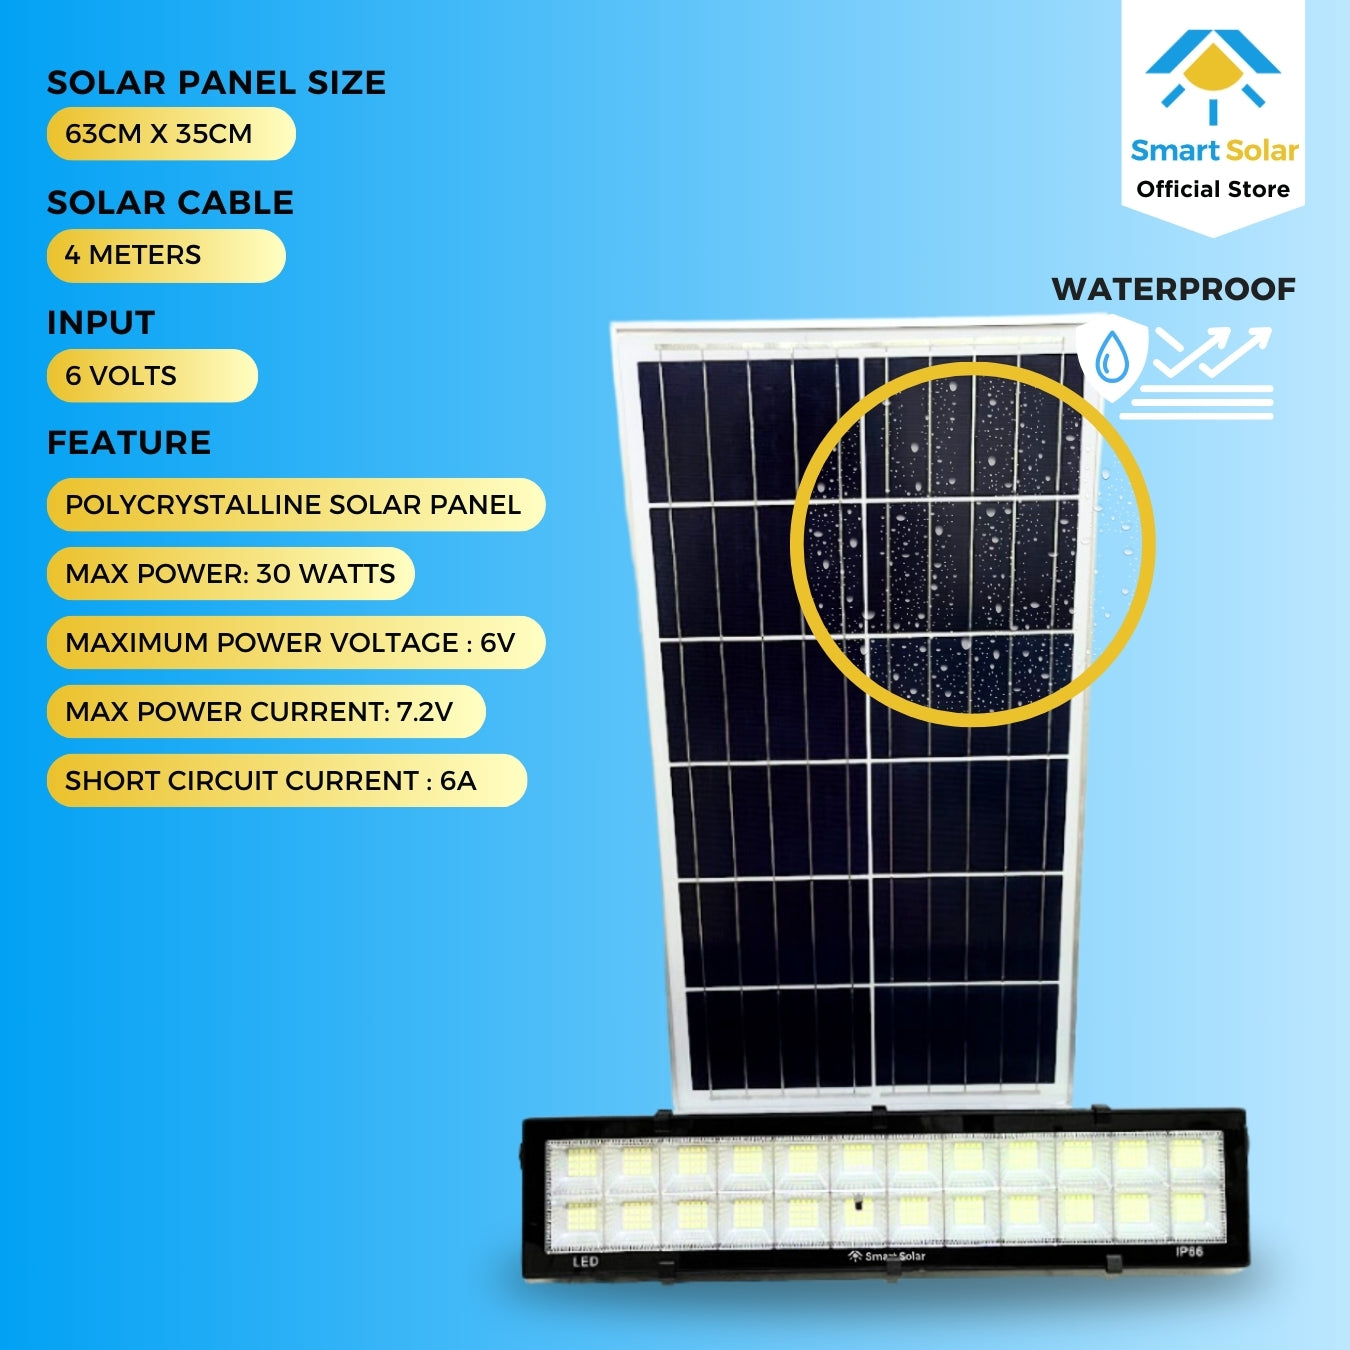 300 watts Smart Solar Waterproof LED Lamp